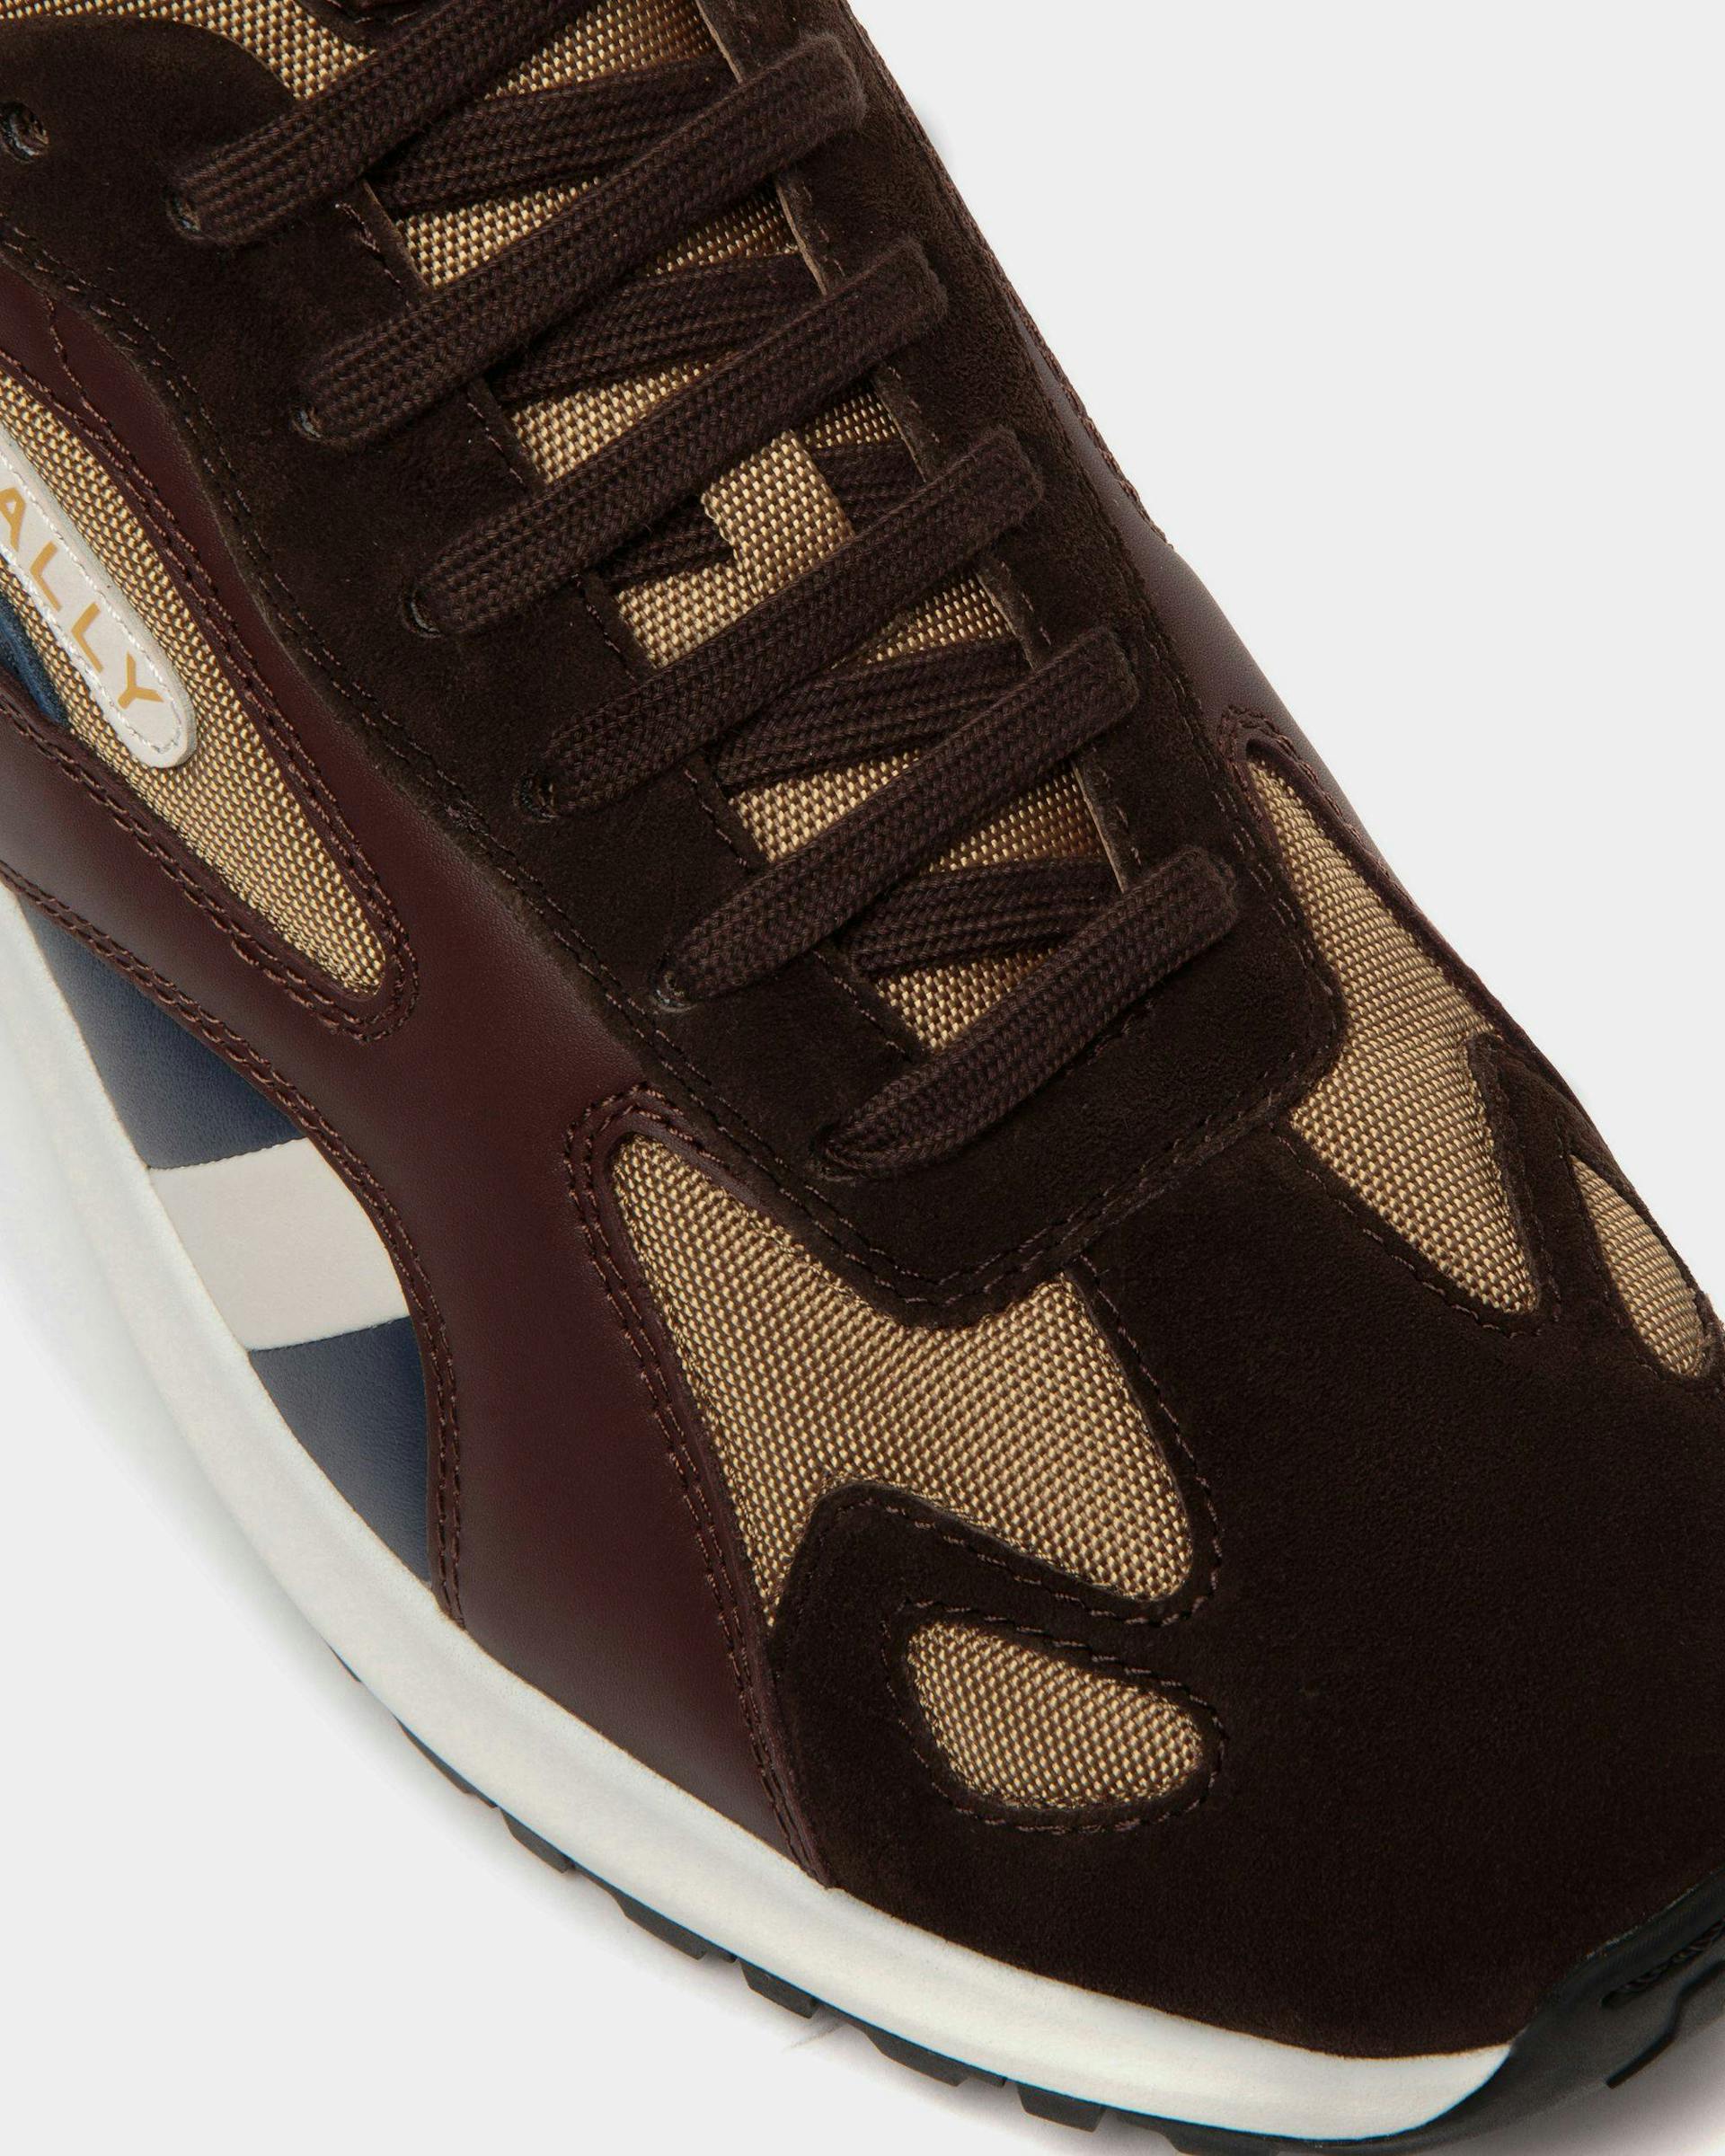 Men's Outline Sneaker in Nylon and Leather | Bally | Still Life Detail